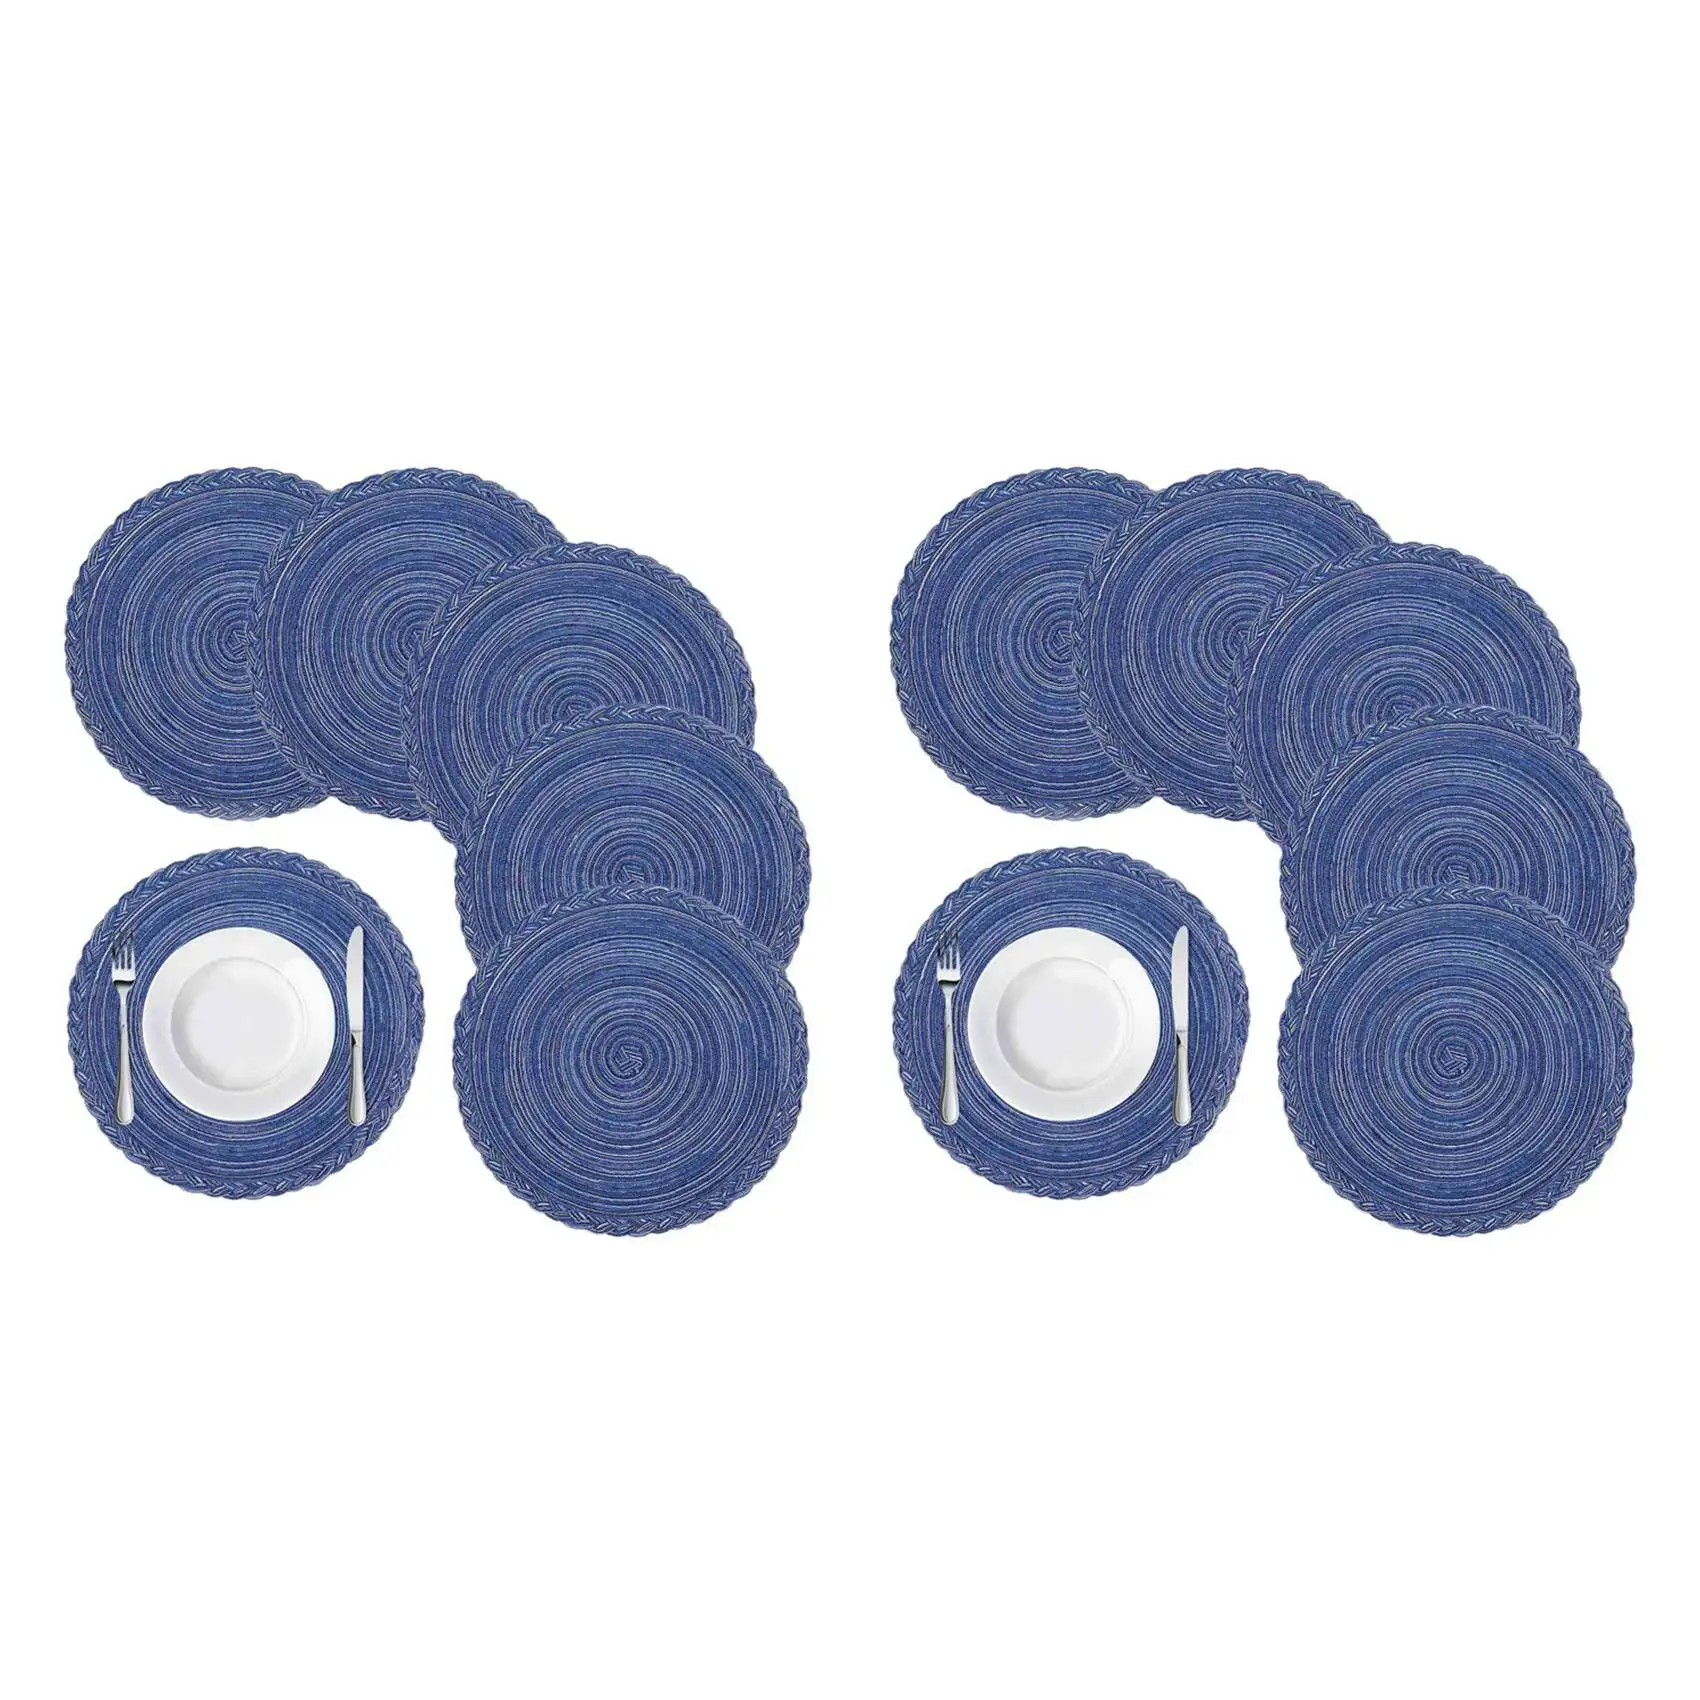 

Набор круглых плетеных салфеток для обеденного стола, термостойкие Нескользящие кухонные коврики, диаметр 36, синие, 12 штук в комплекте